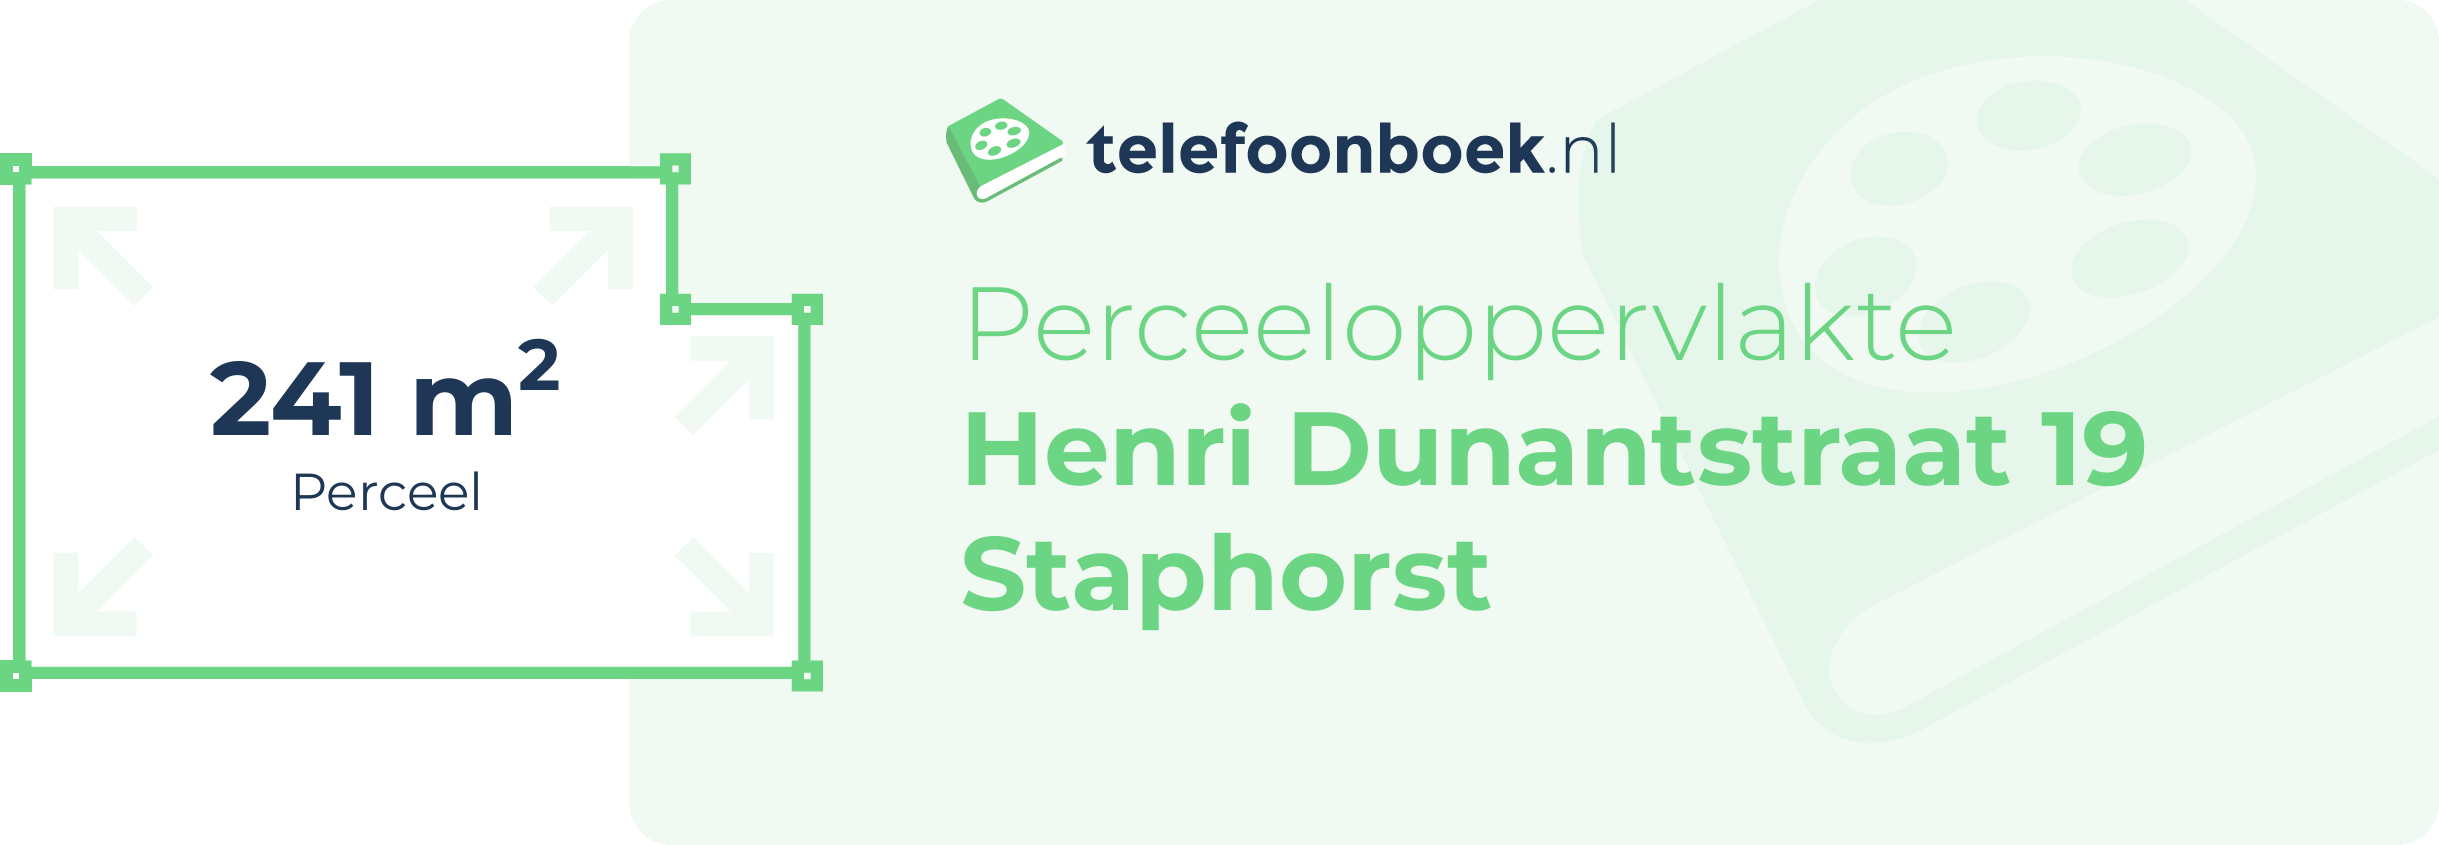 Perceeloppervlakte Henri Dunantstraat 19 Staphorst